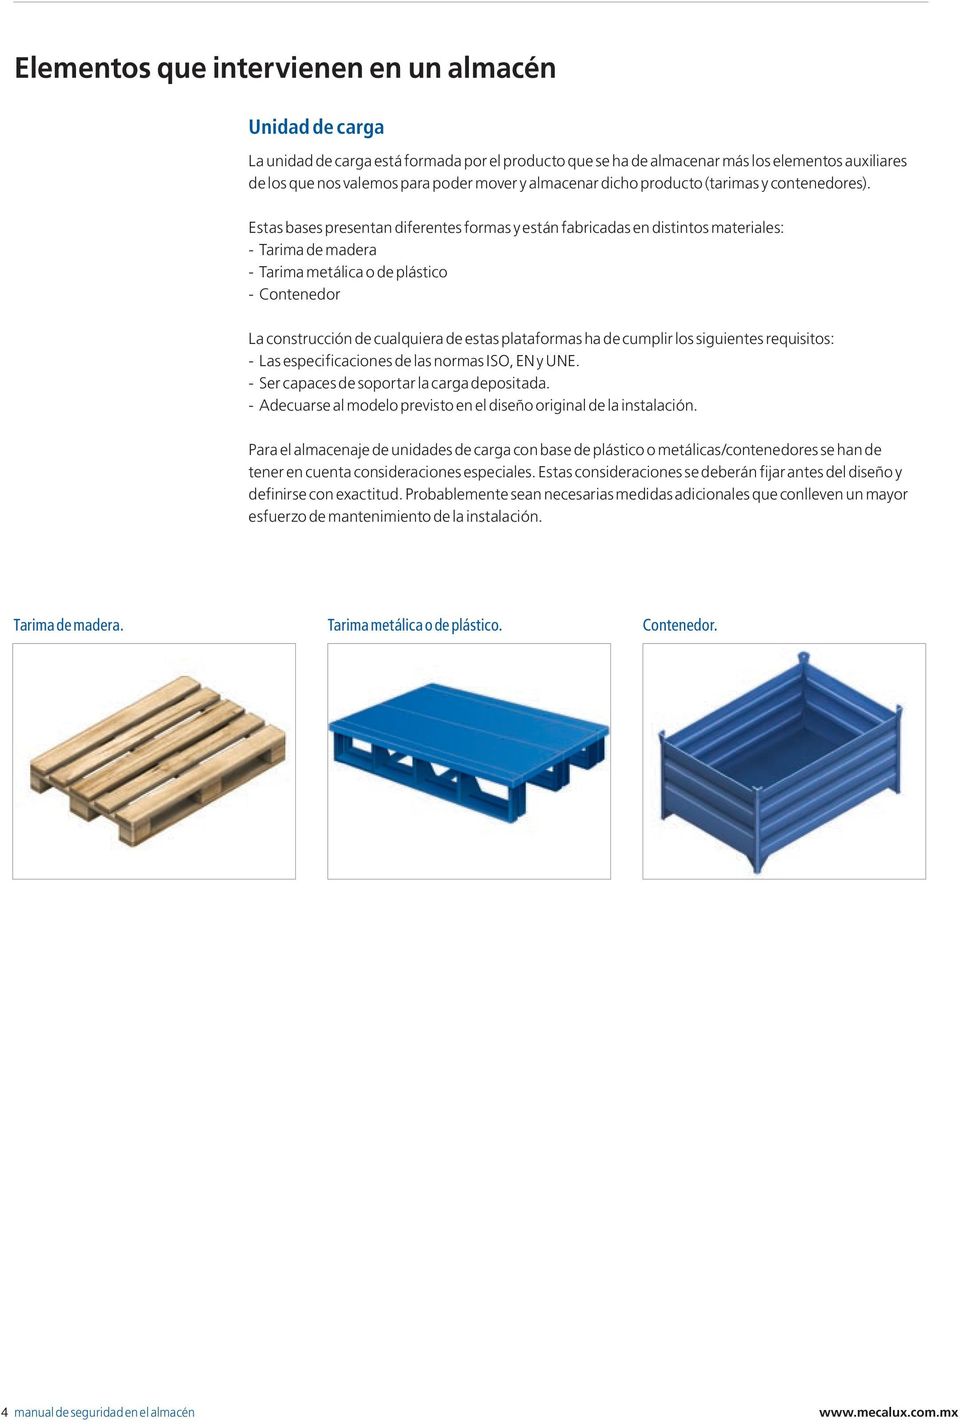 Estas bases presentan diferentes formas y están fabricadas en distintos materiales: - Tarima de madera - Tarima metálica o de plástico - Contenedor La construcción de cualquiera de estas plataformas